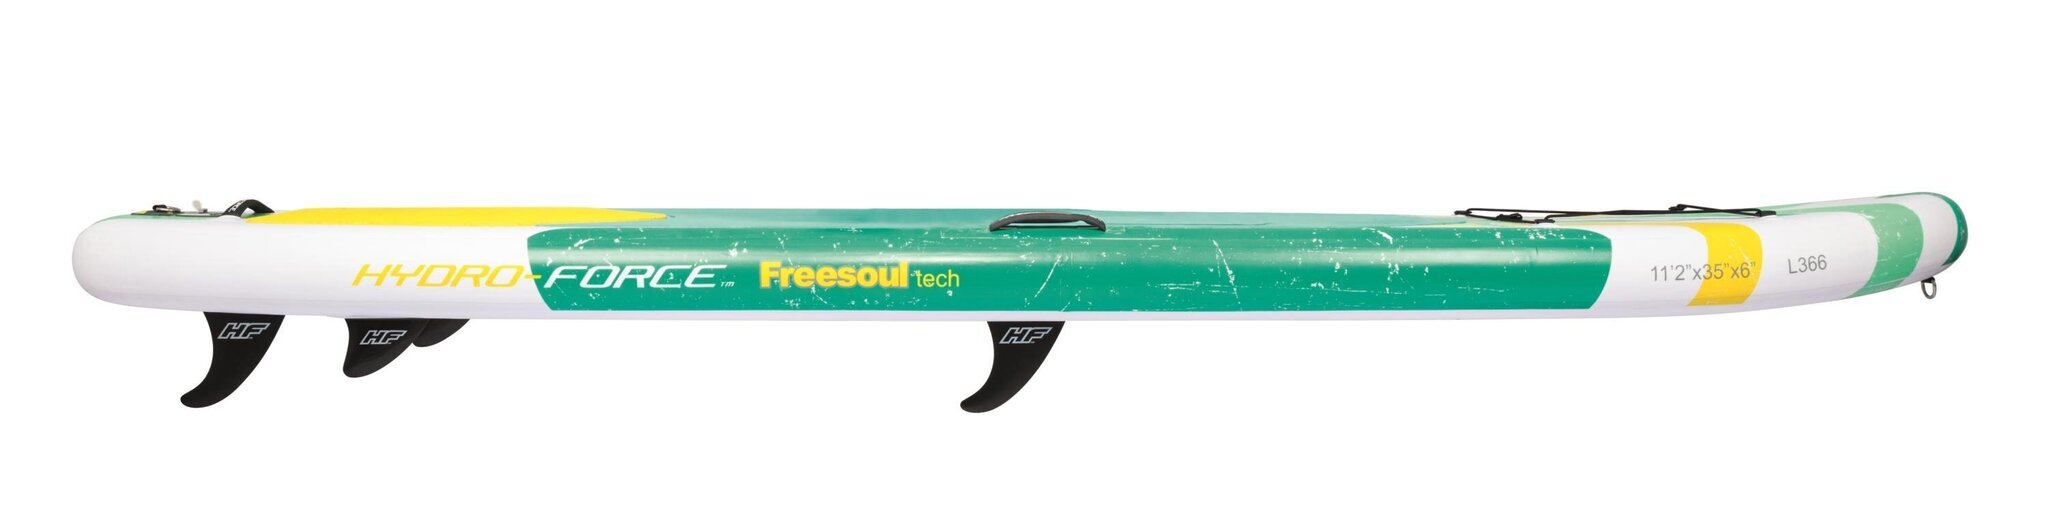 Pripučiama irklentė Bestway Hydro-Force Freesoul Tech, 340x89 cm kaina ir informacija | Irklentės, vandens slidės ir atrakcionai | pigu.lt